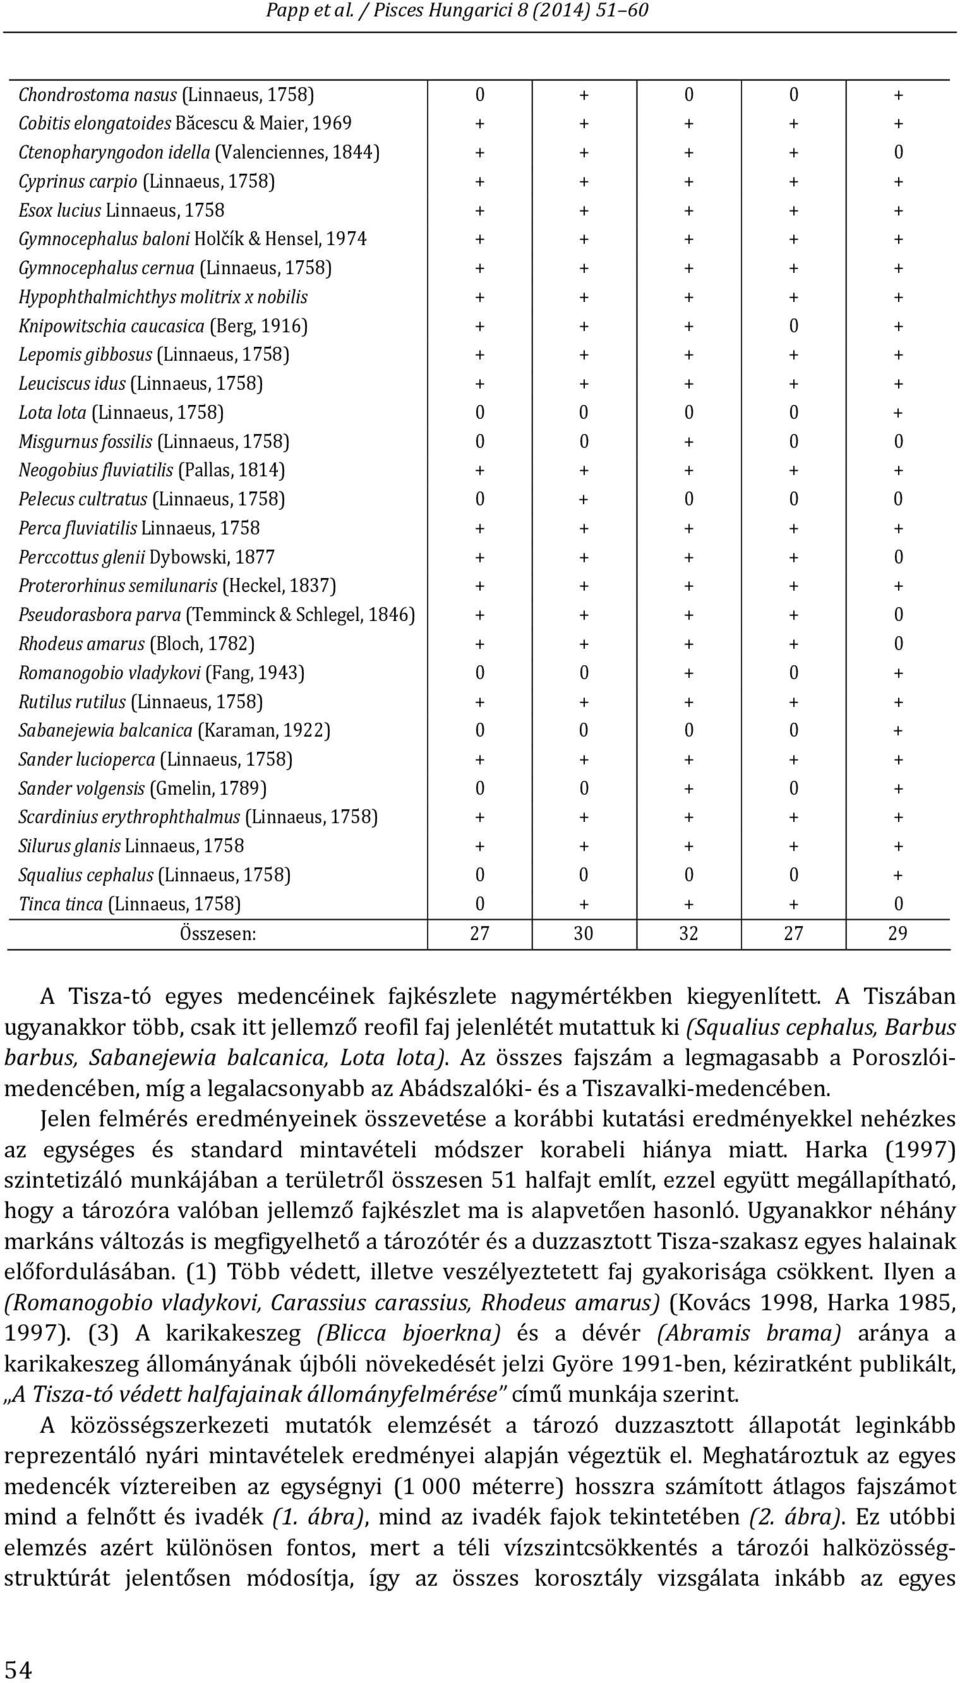 caucasica (Berg, 1916) + + + 0 + Lepomis gibbosus (Linnaeus, 1758) + + + + + Leuciscus idus (Linnaeus, 1758) + + + + + Lota lota (Linnaeus, 1758) 0 0 0 0 + Misgurnus fossilis (Linnaeus, 1758) 0 0 + 0